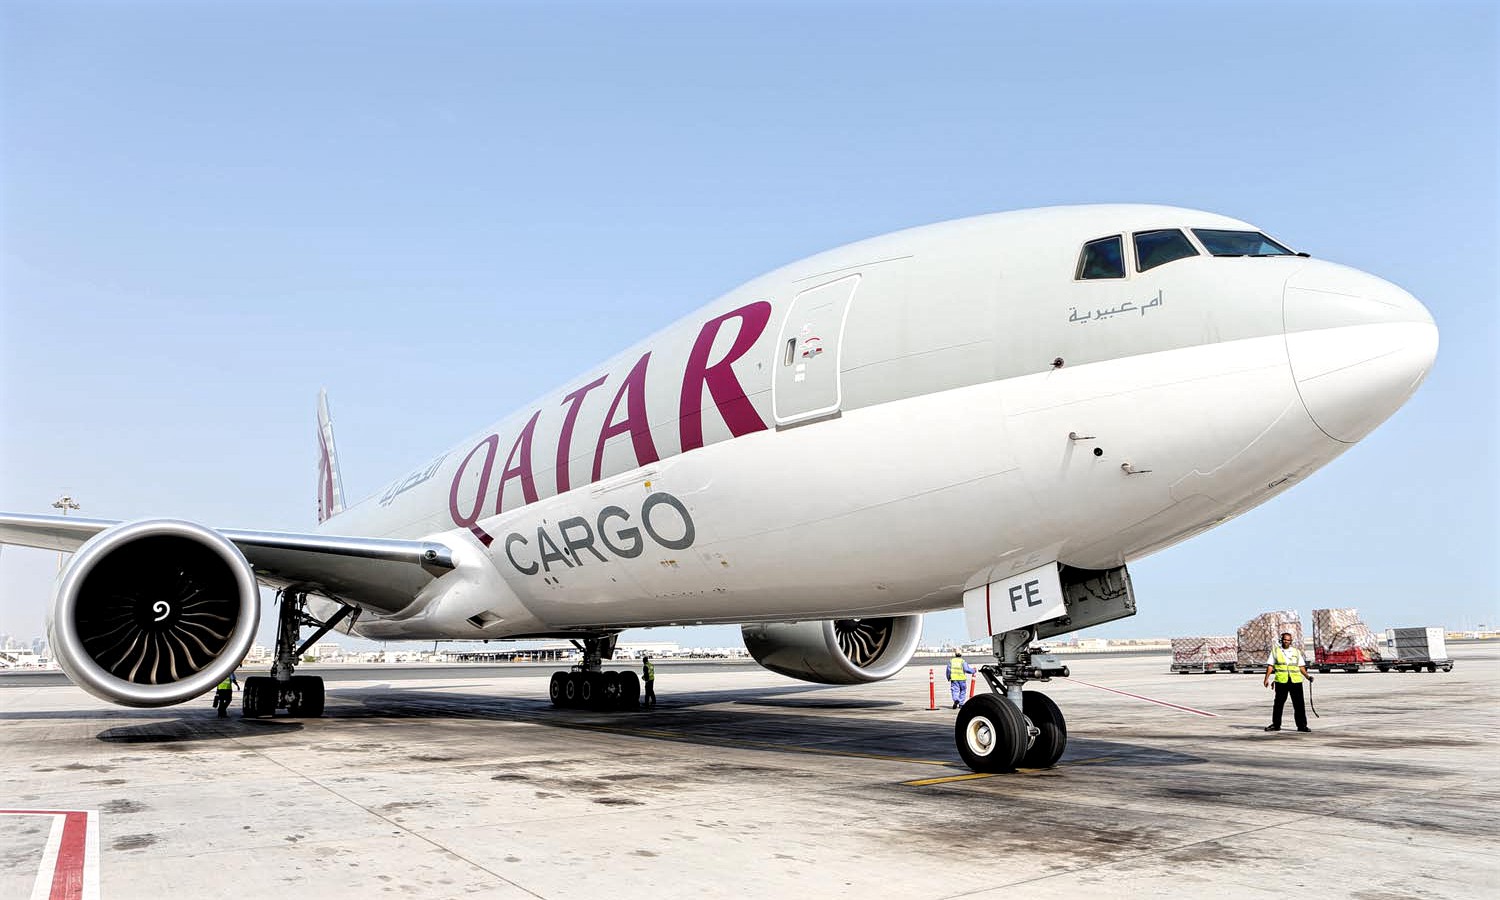  Qatar  Airways  Receives Boeing 777  Freighter For Cargo 